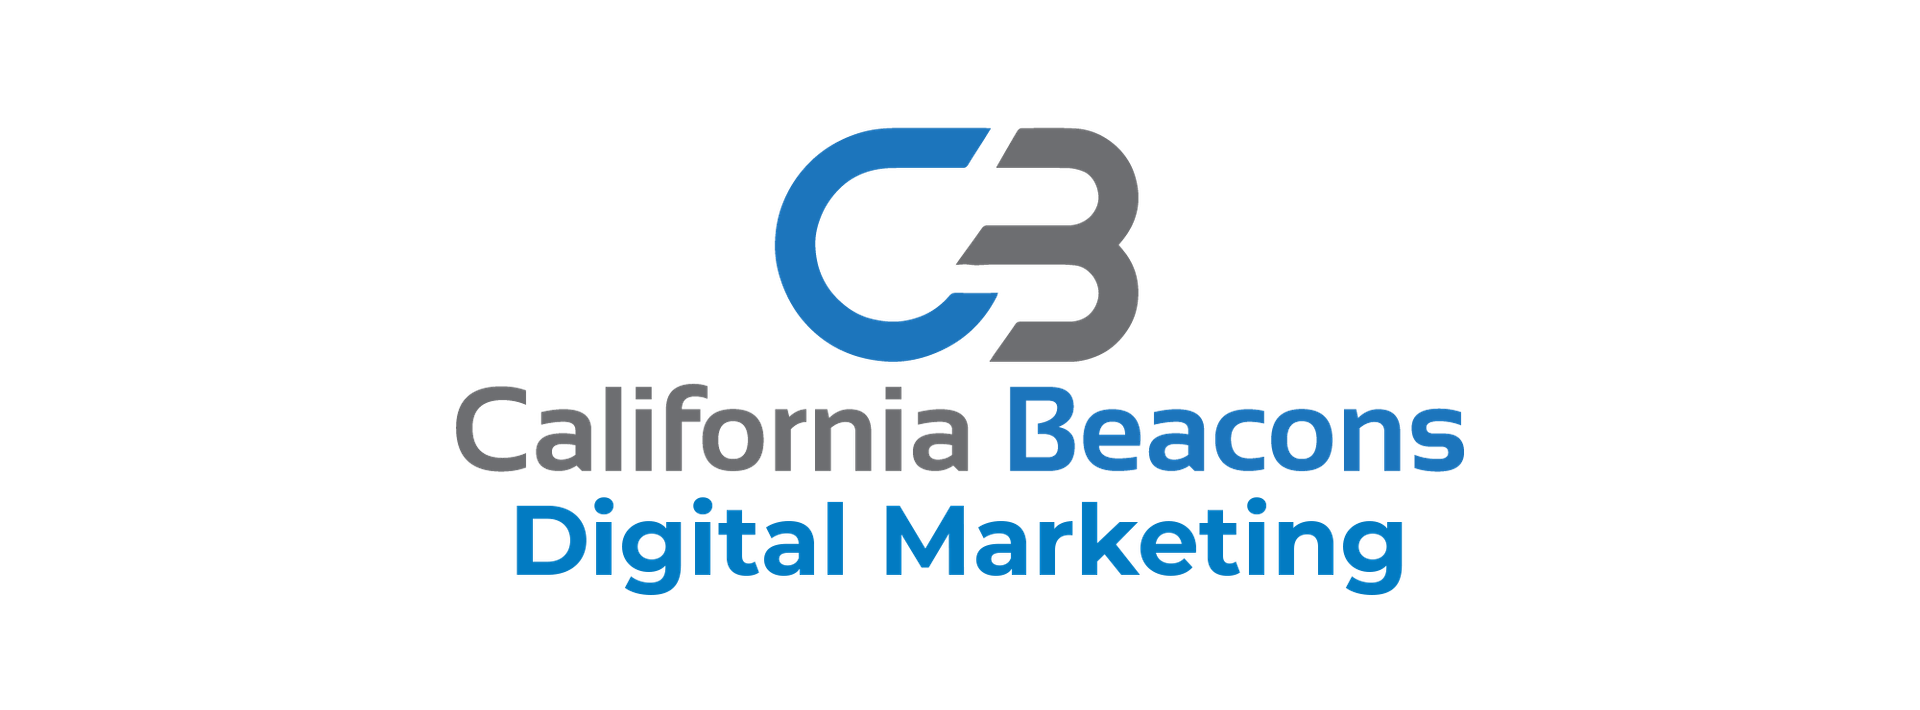 California Beacons Digital Marketing